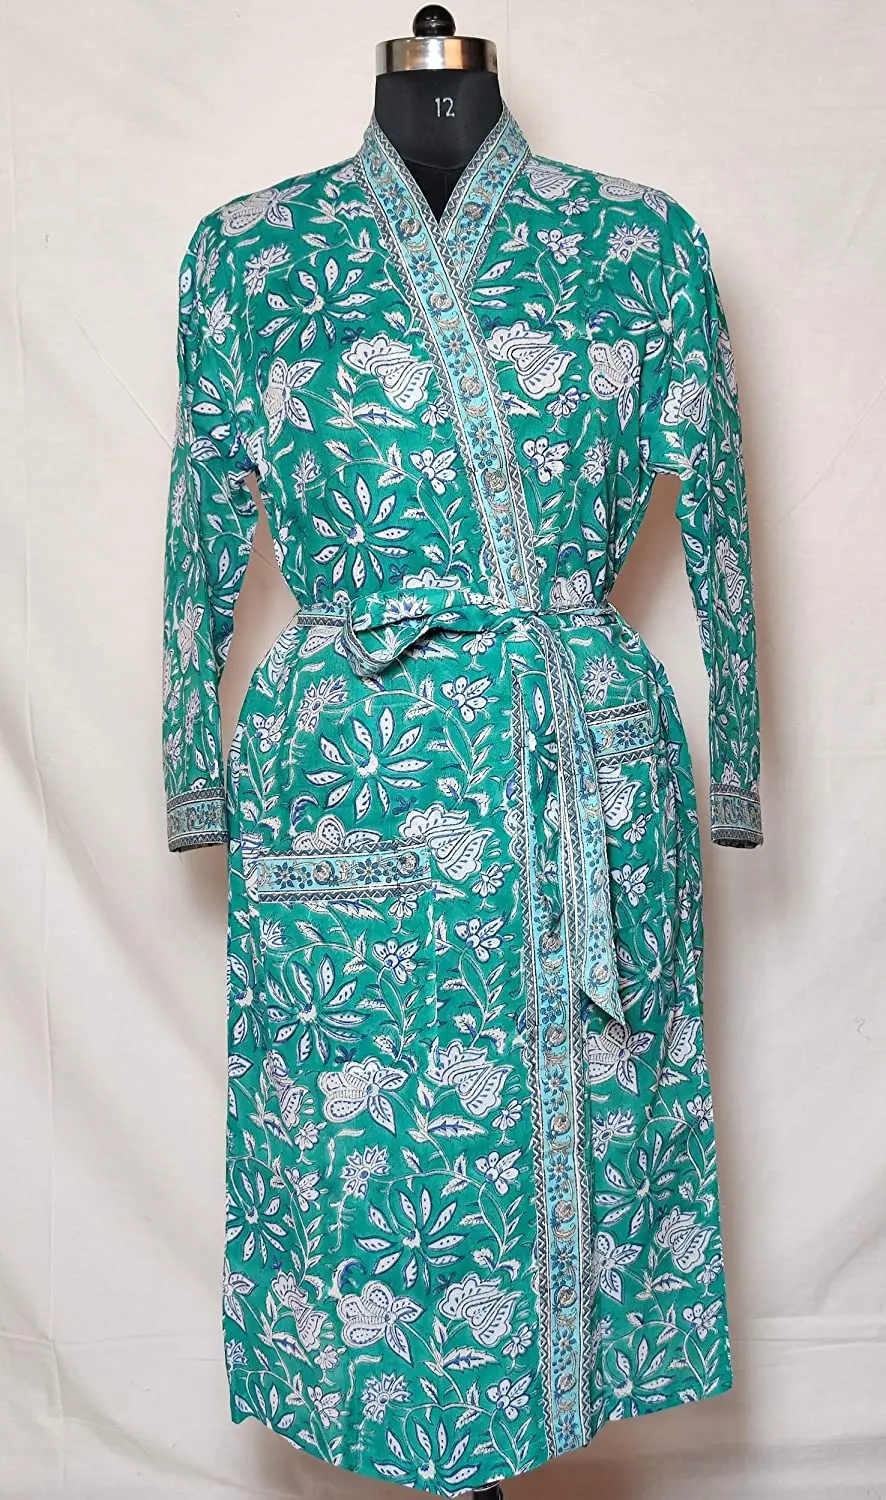 Hot Indian Hand Block Print Kimono Cotton Kimono/ Maxi Dress,Floral ...